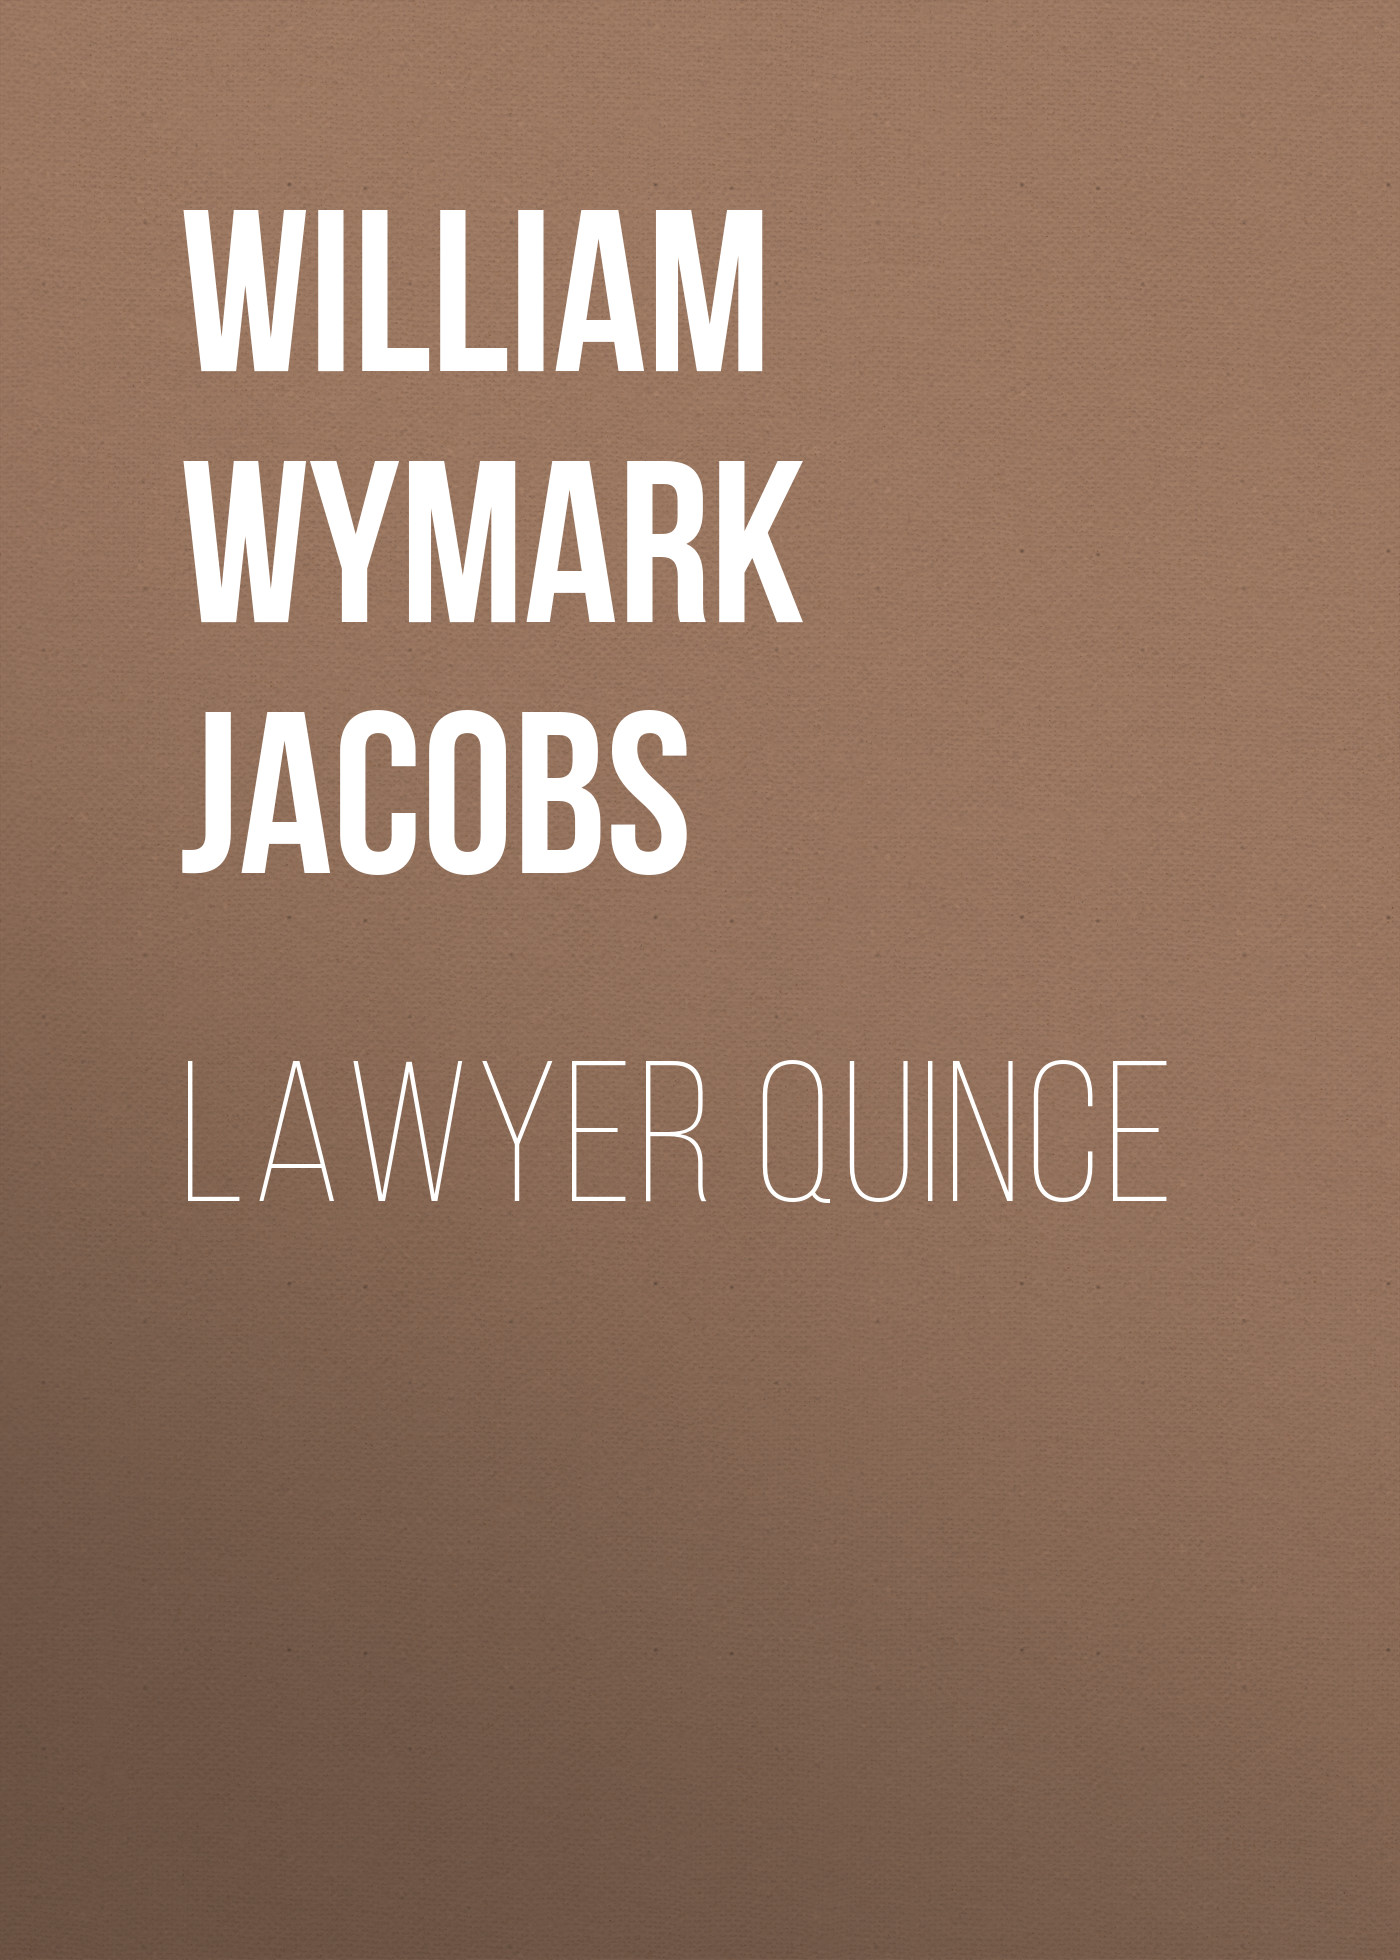 Книга Lawyer Quince из серии , созданная William Wymark Jacobs, может относится к жанру Зарубежная классика, Зарубежная старинная литература. Стоимость электронной книги Lawyer Quince с идентификатором 34843982 составляет 0 руб.